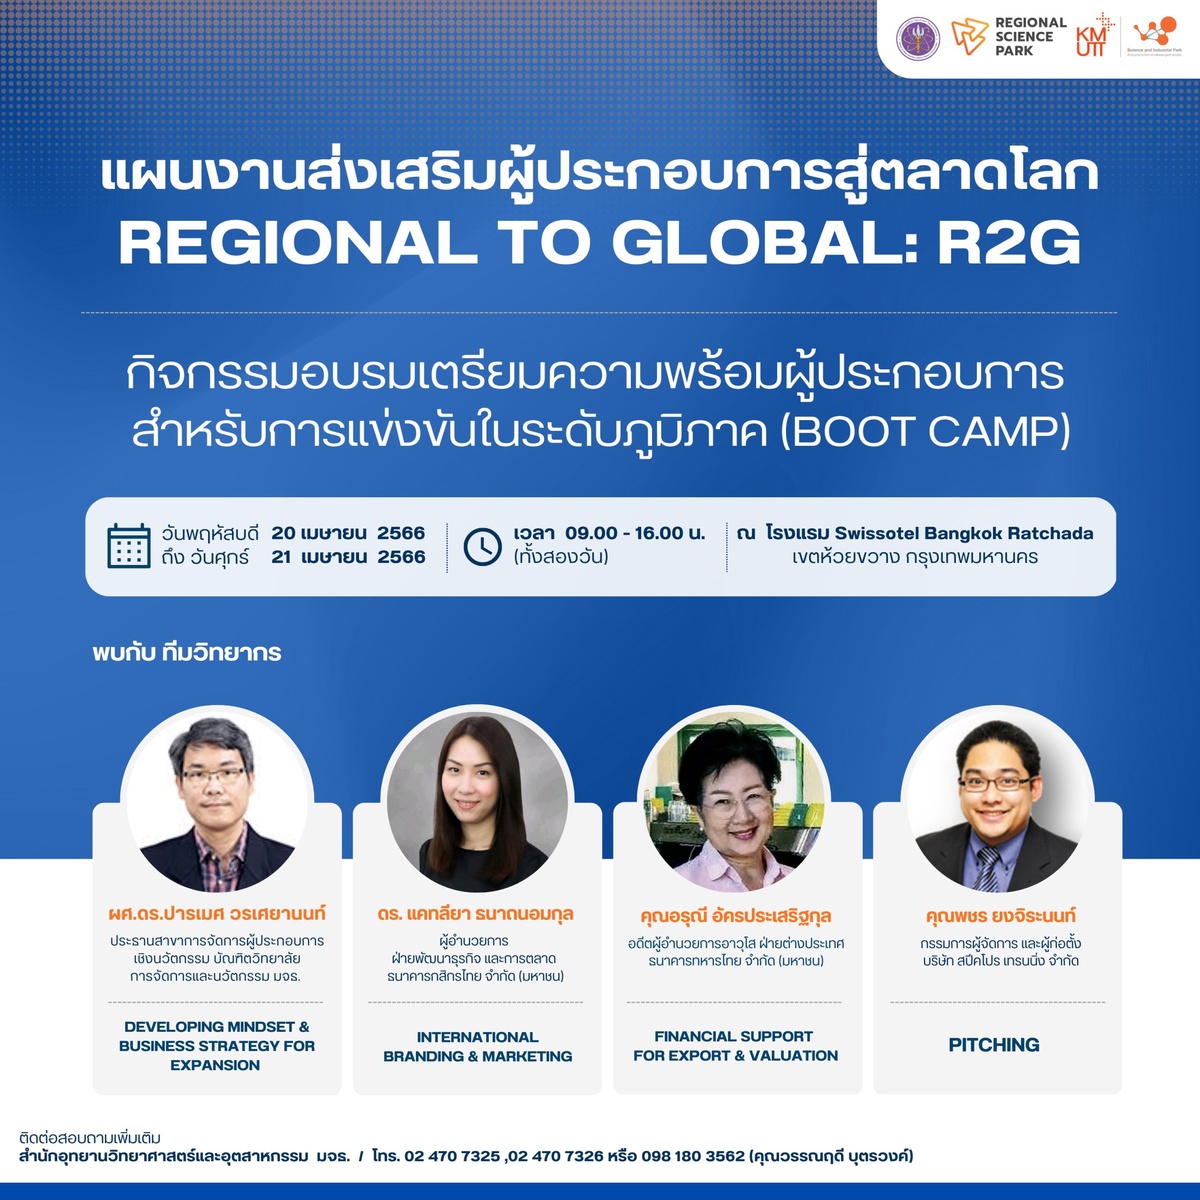 สำนักงานวิทยาศาสตร์ มจธ. พานักวิจัยไทยเตรียมความพร้อมเข้าตลาดโลก ภายใต้โครงการ R2G (Regional to Global)